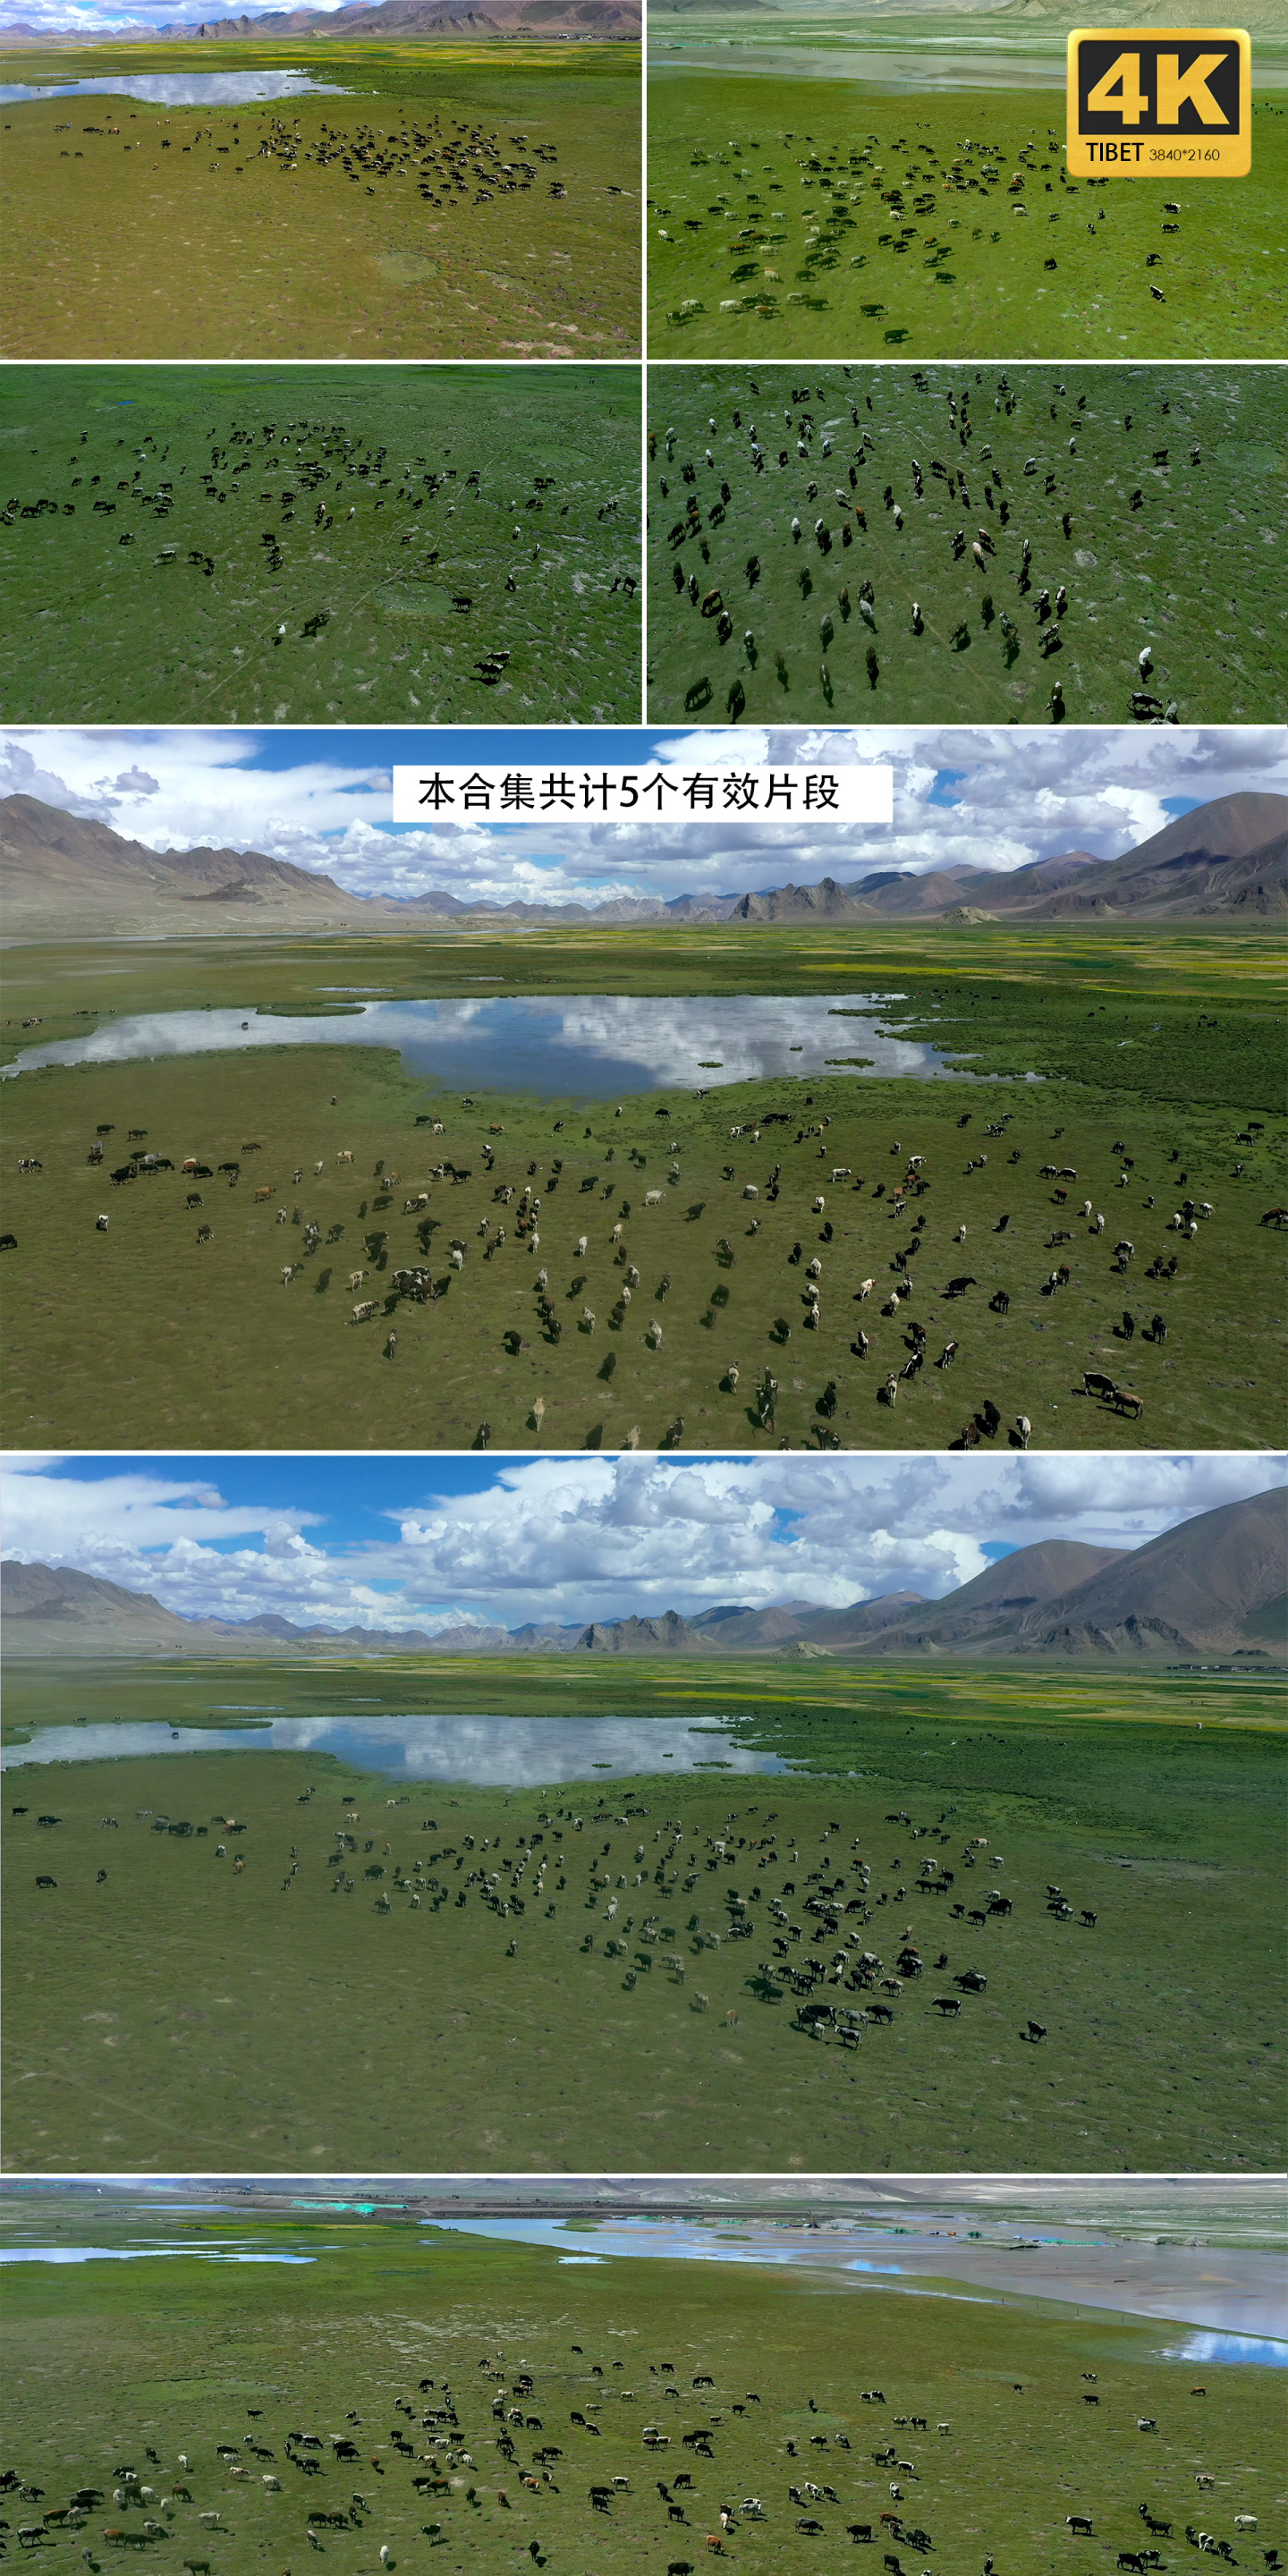 【合集】牛群 牦牛群 西藏牦牛 草原牛